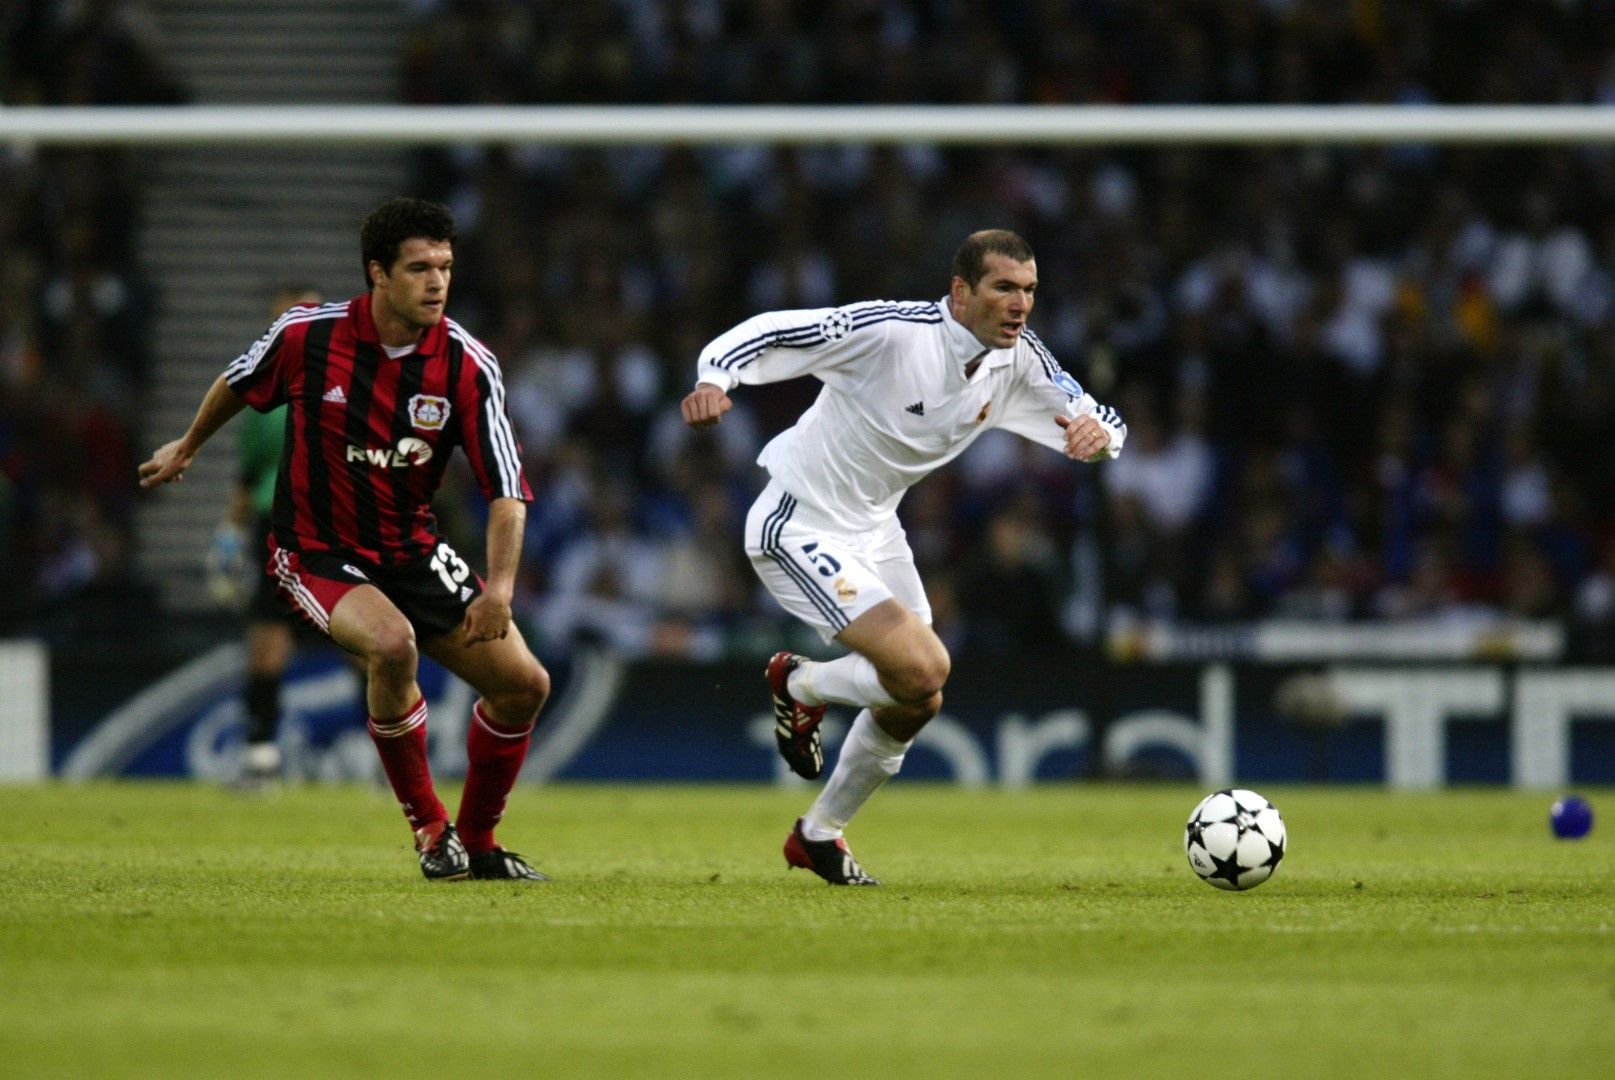 2002 г., Глазгоу. Зинедин Зидан срещу Михаел Балак, двама от най-големите футболисти от поколението в края на миналия и началото на новия век. Зизу вкара паметен гол, с който Реал спечели финала в Шампионската лига с 2:1.